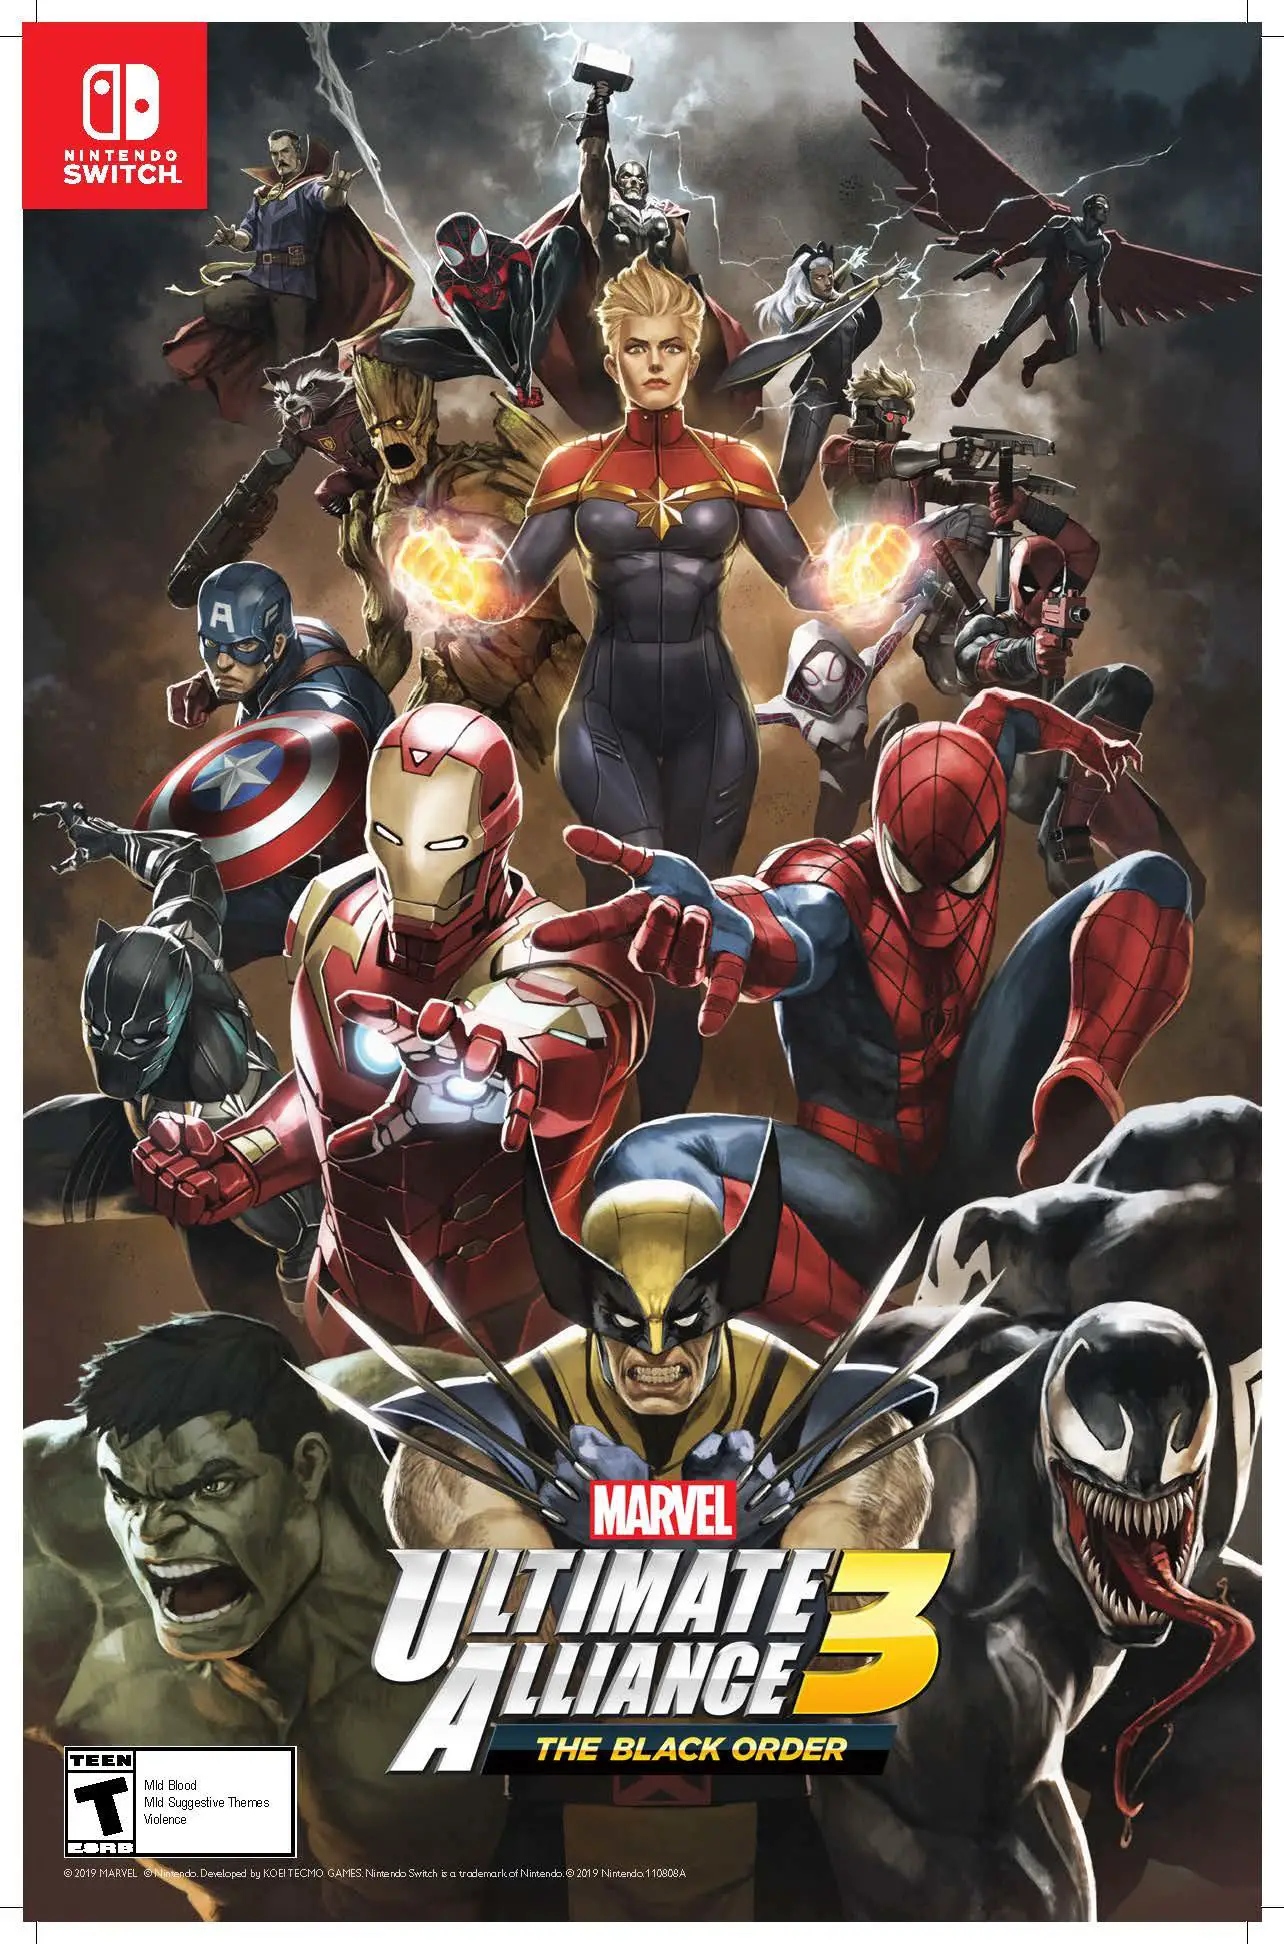 ultimate alliance 3 release date